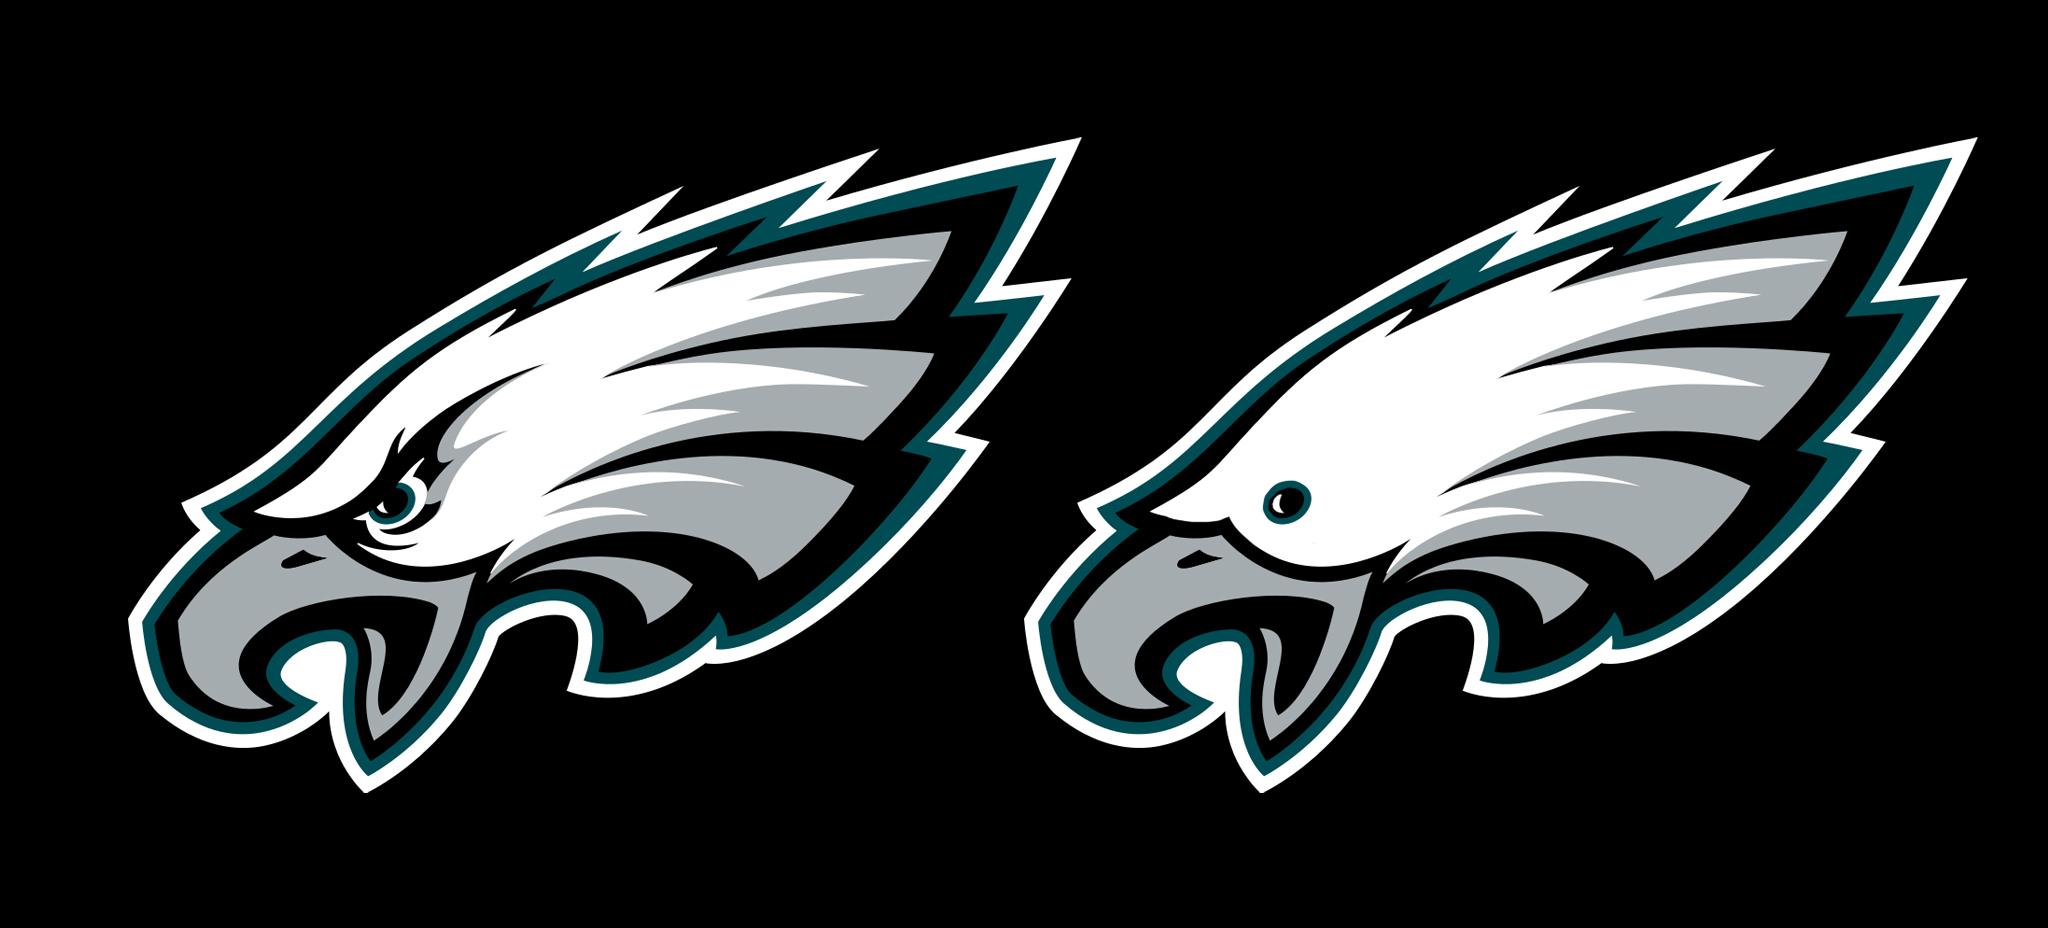 Eagles Logo - The Philadelphia Eagles logo without eyebrows : eagles